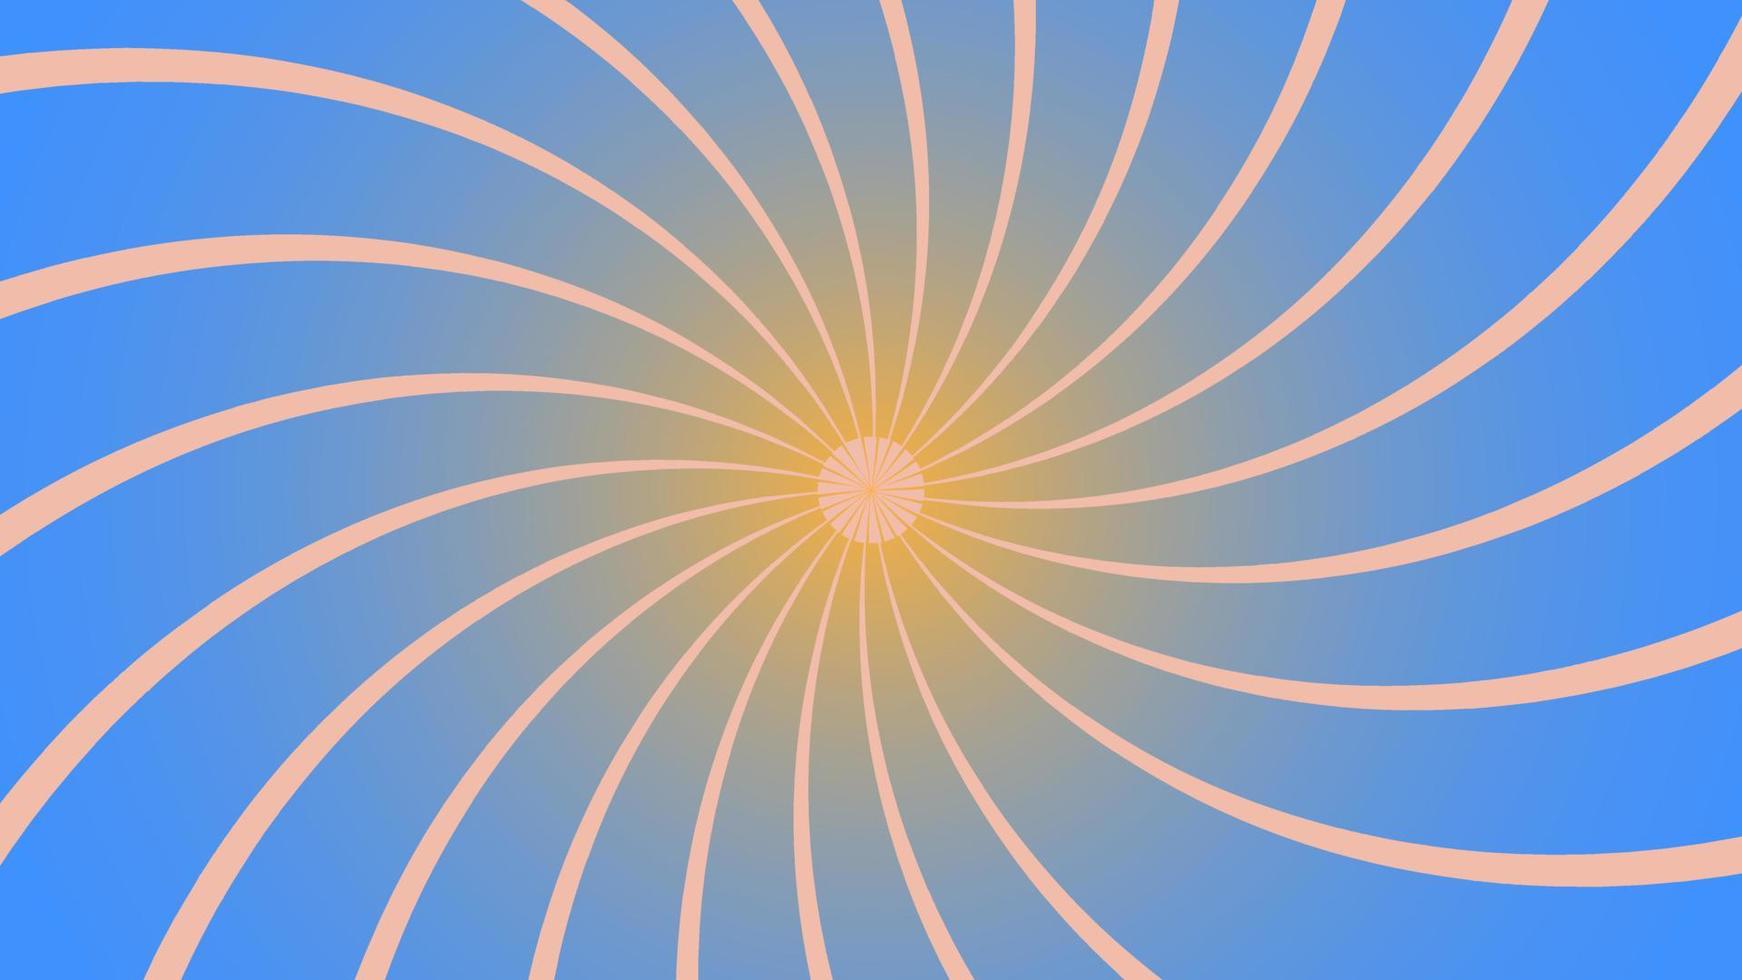 hélice de rotação estética gradiente azul e amarela, ilustração de fundo espiral sunburst, perfeita para pano de fundo, papel de parede, banner, cartão postal, plano de fundo para o seu design vetor